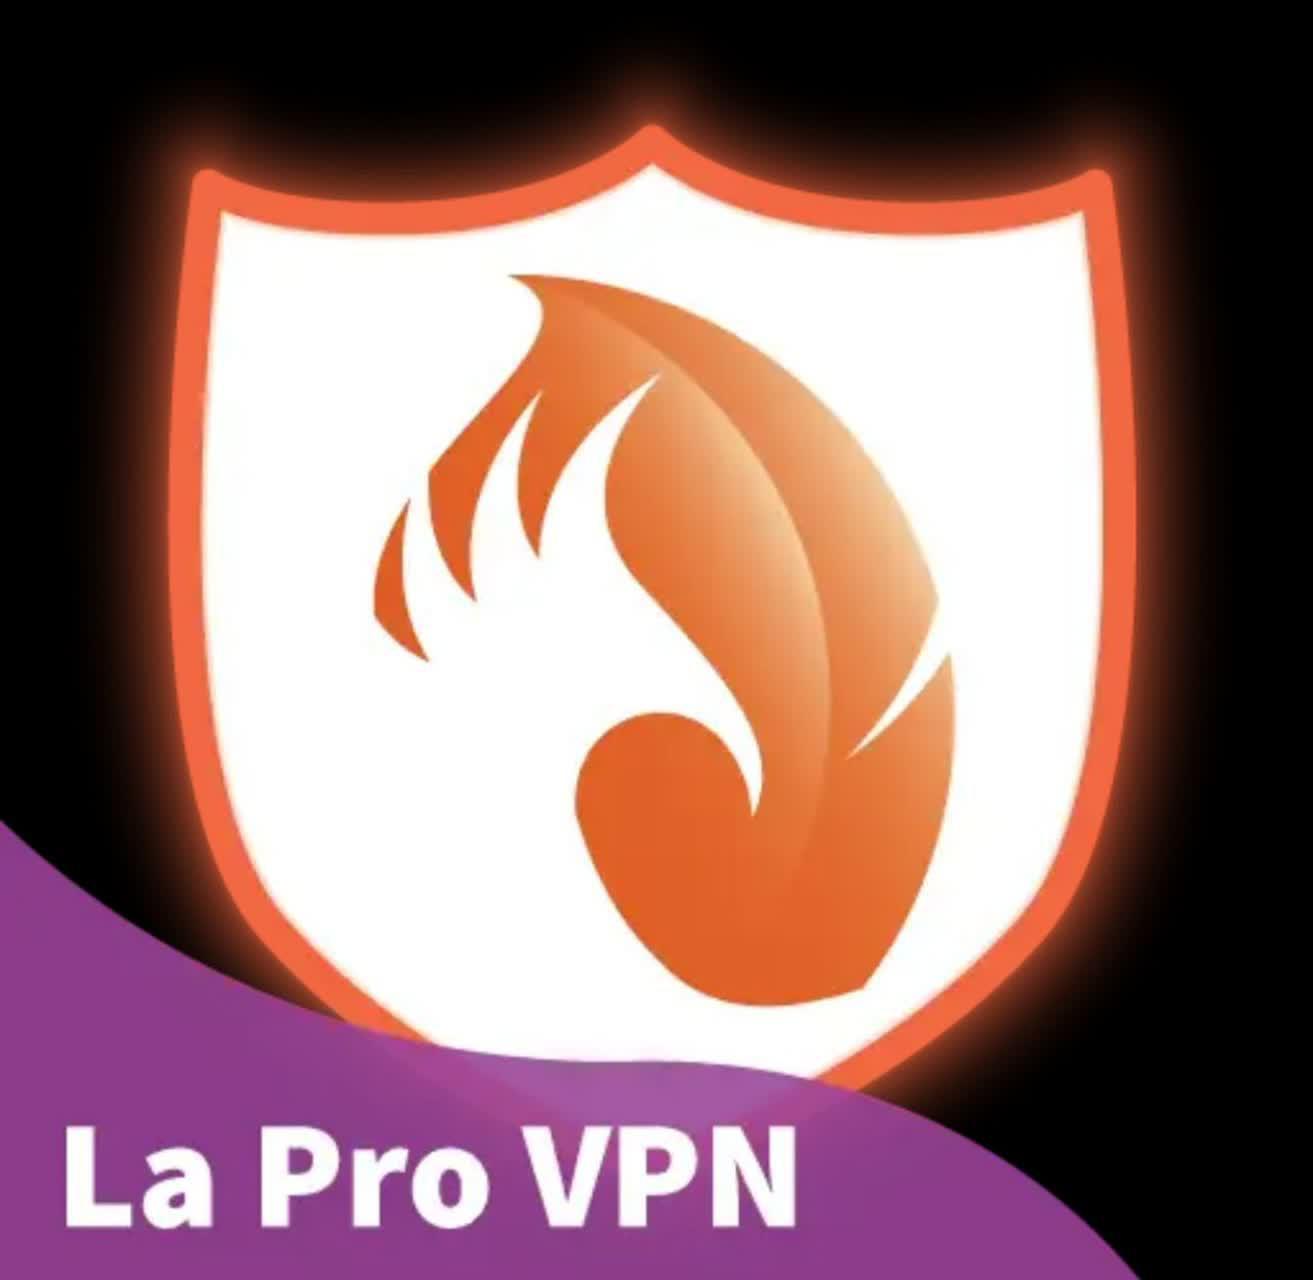 دانلود فیلتر شکن LaPro Vpn برای اندروید + آخرین نسخه